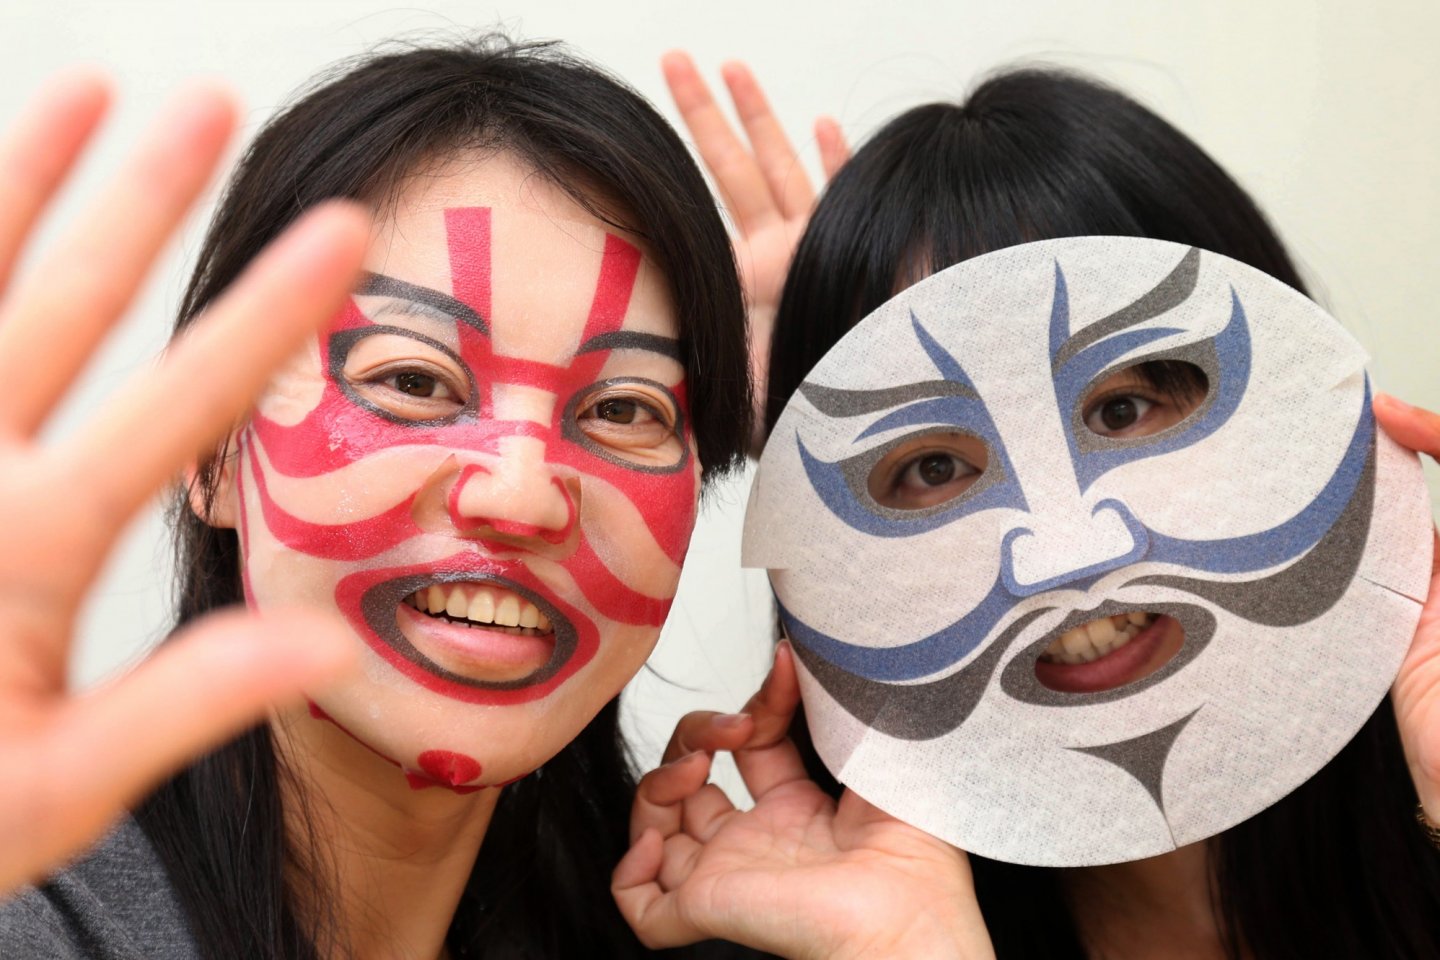 Coba dan rasakan serunya menggunakan Kabuki Face Packs